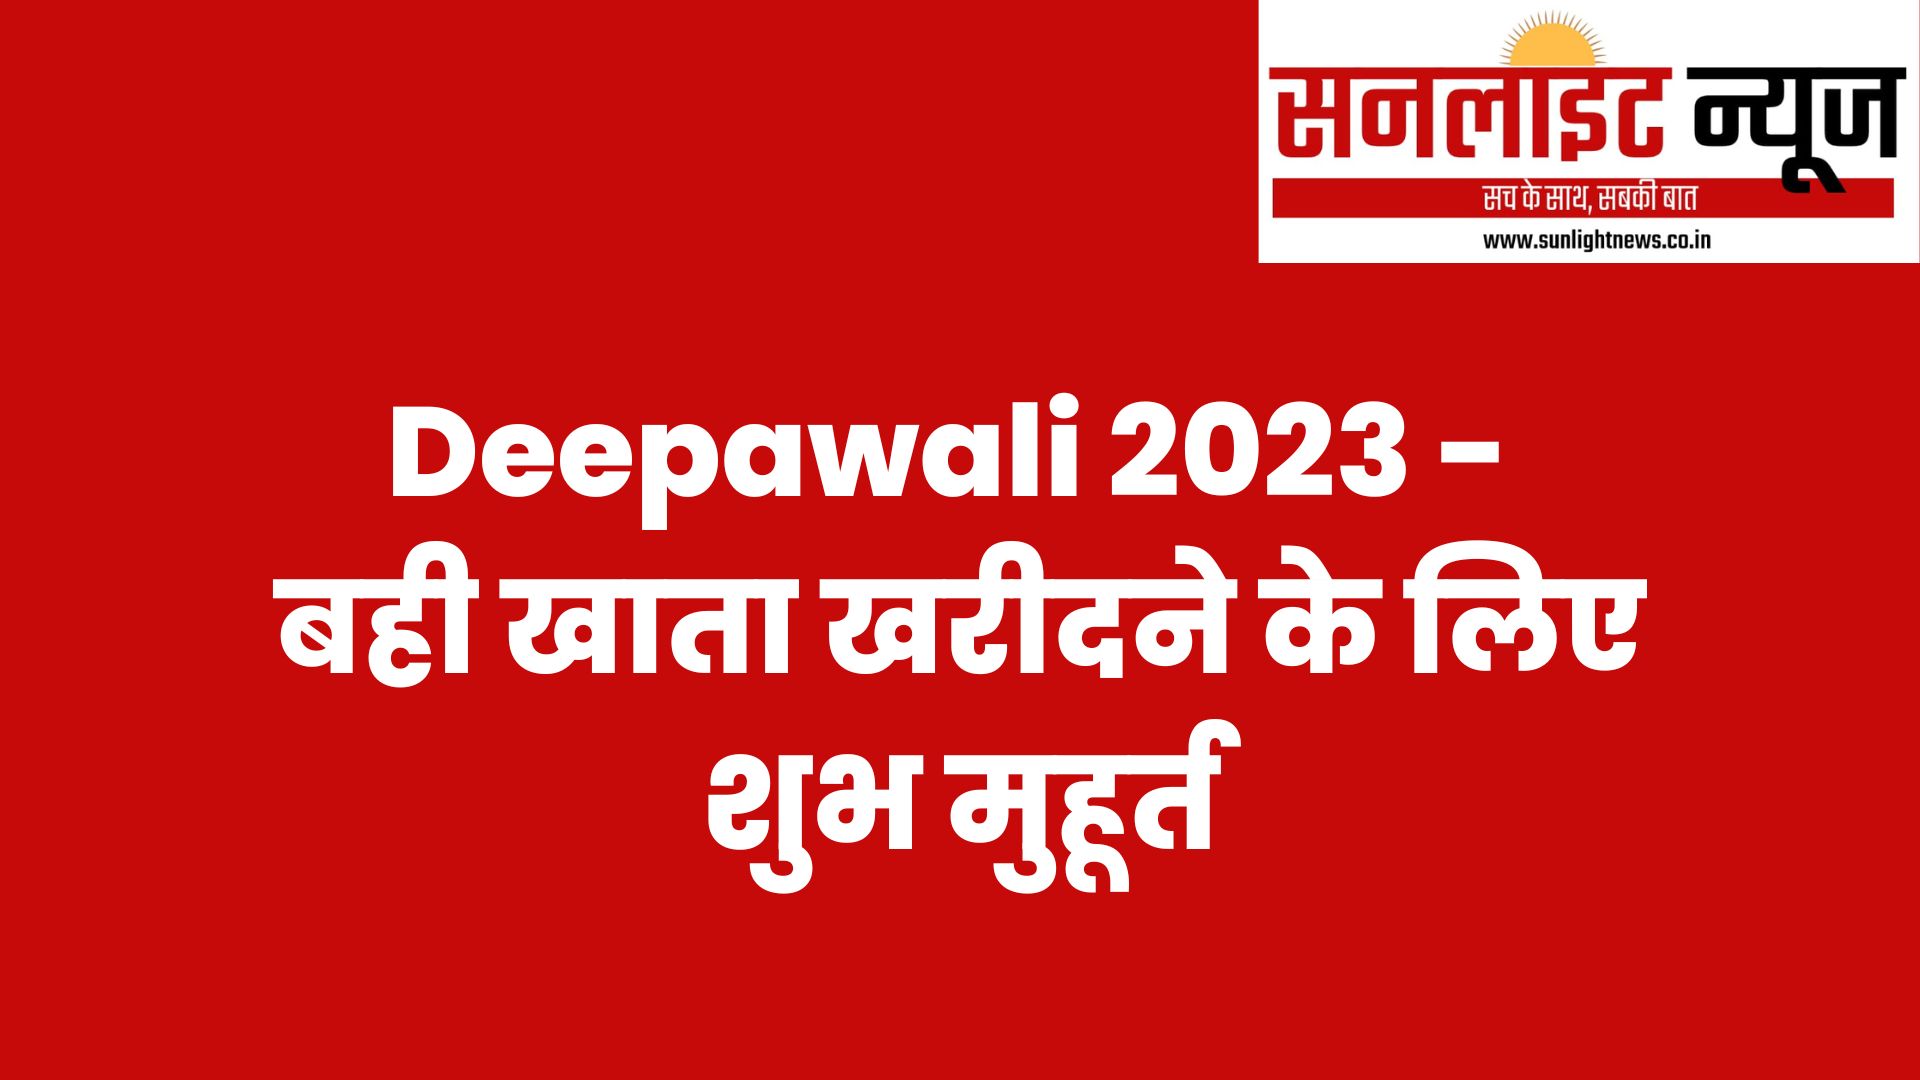 Deepawali 2023 - बही खाता खरीदने के लिए शुभ मुहूर्त